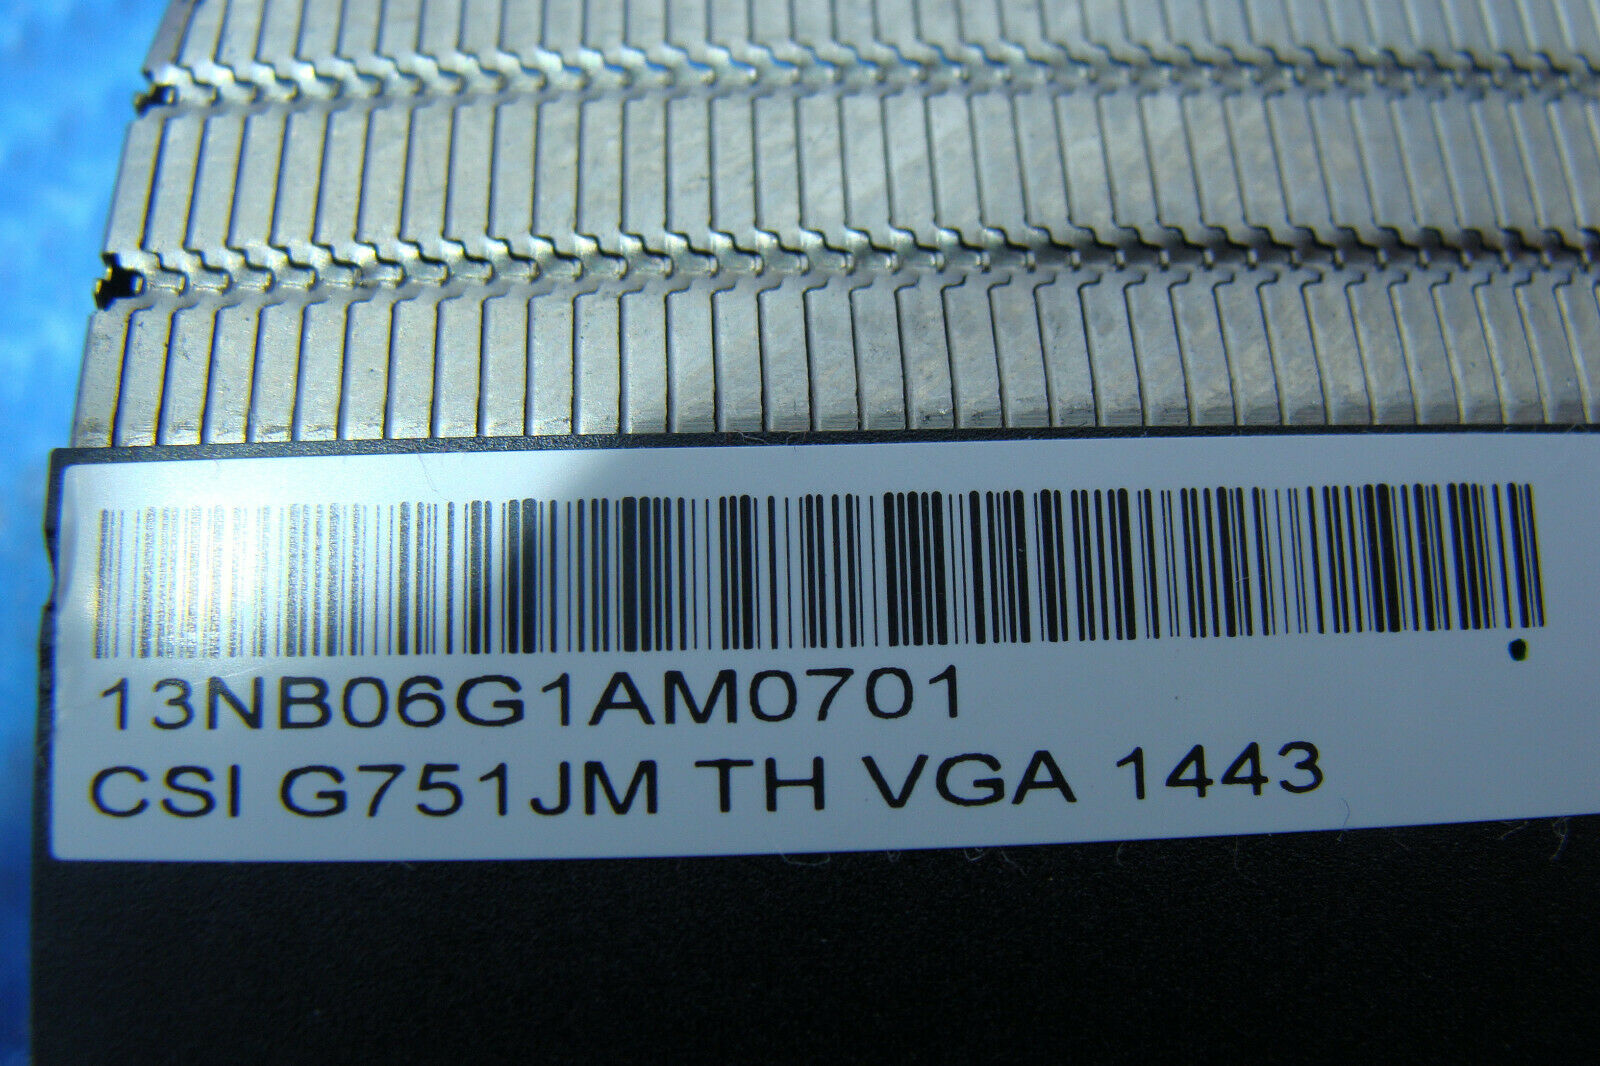 Asus ROG G751JM-BHI7T25 17.3